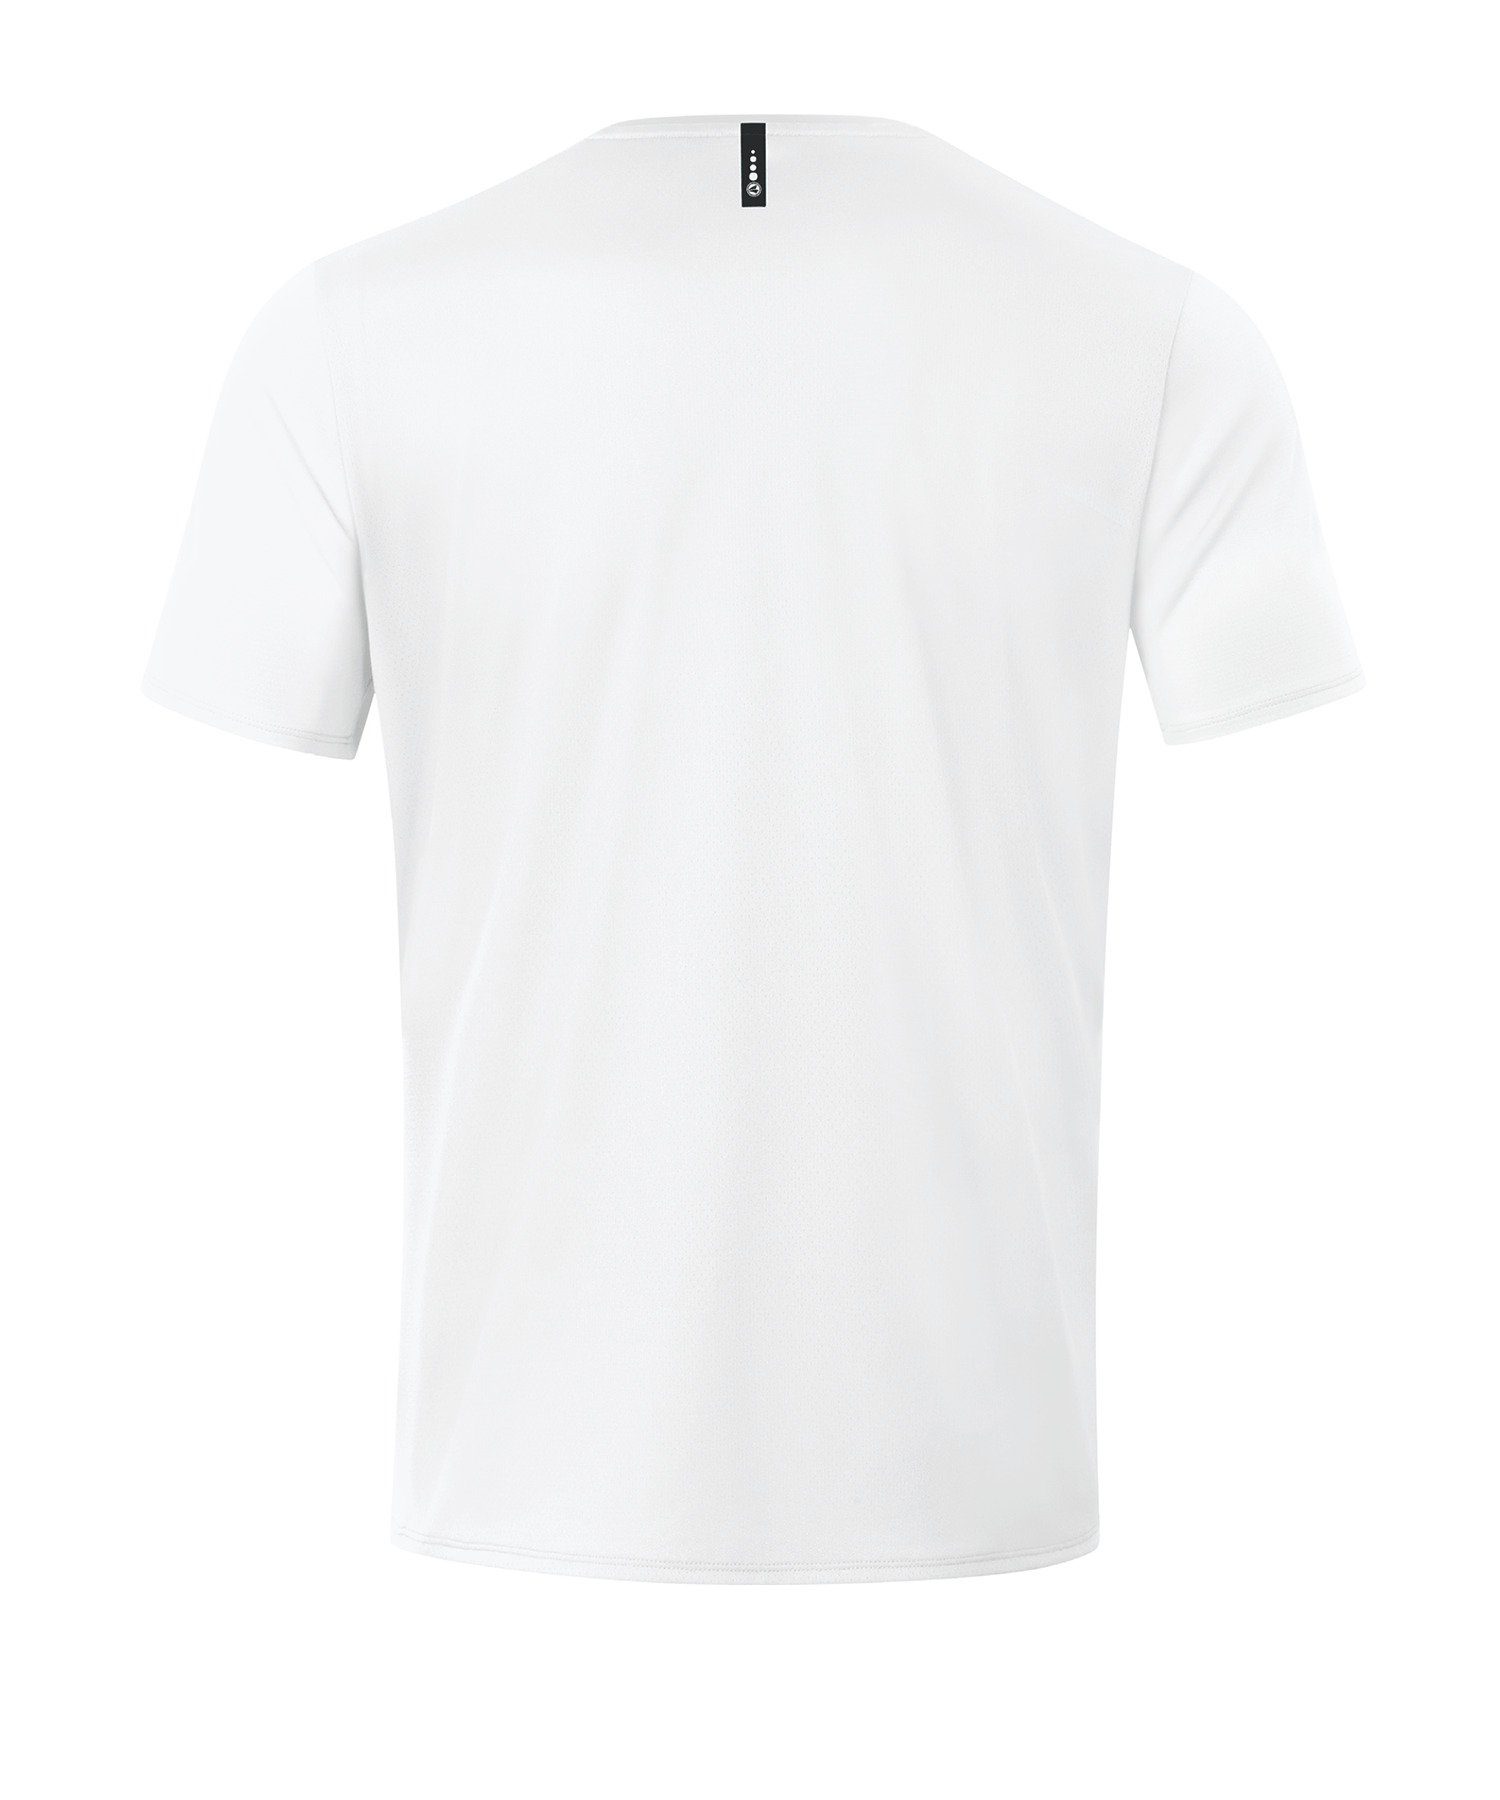 Jako weiss default T-Shirt Champ T-Shirt 2.0